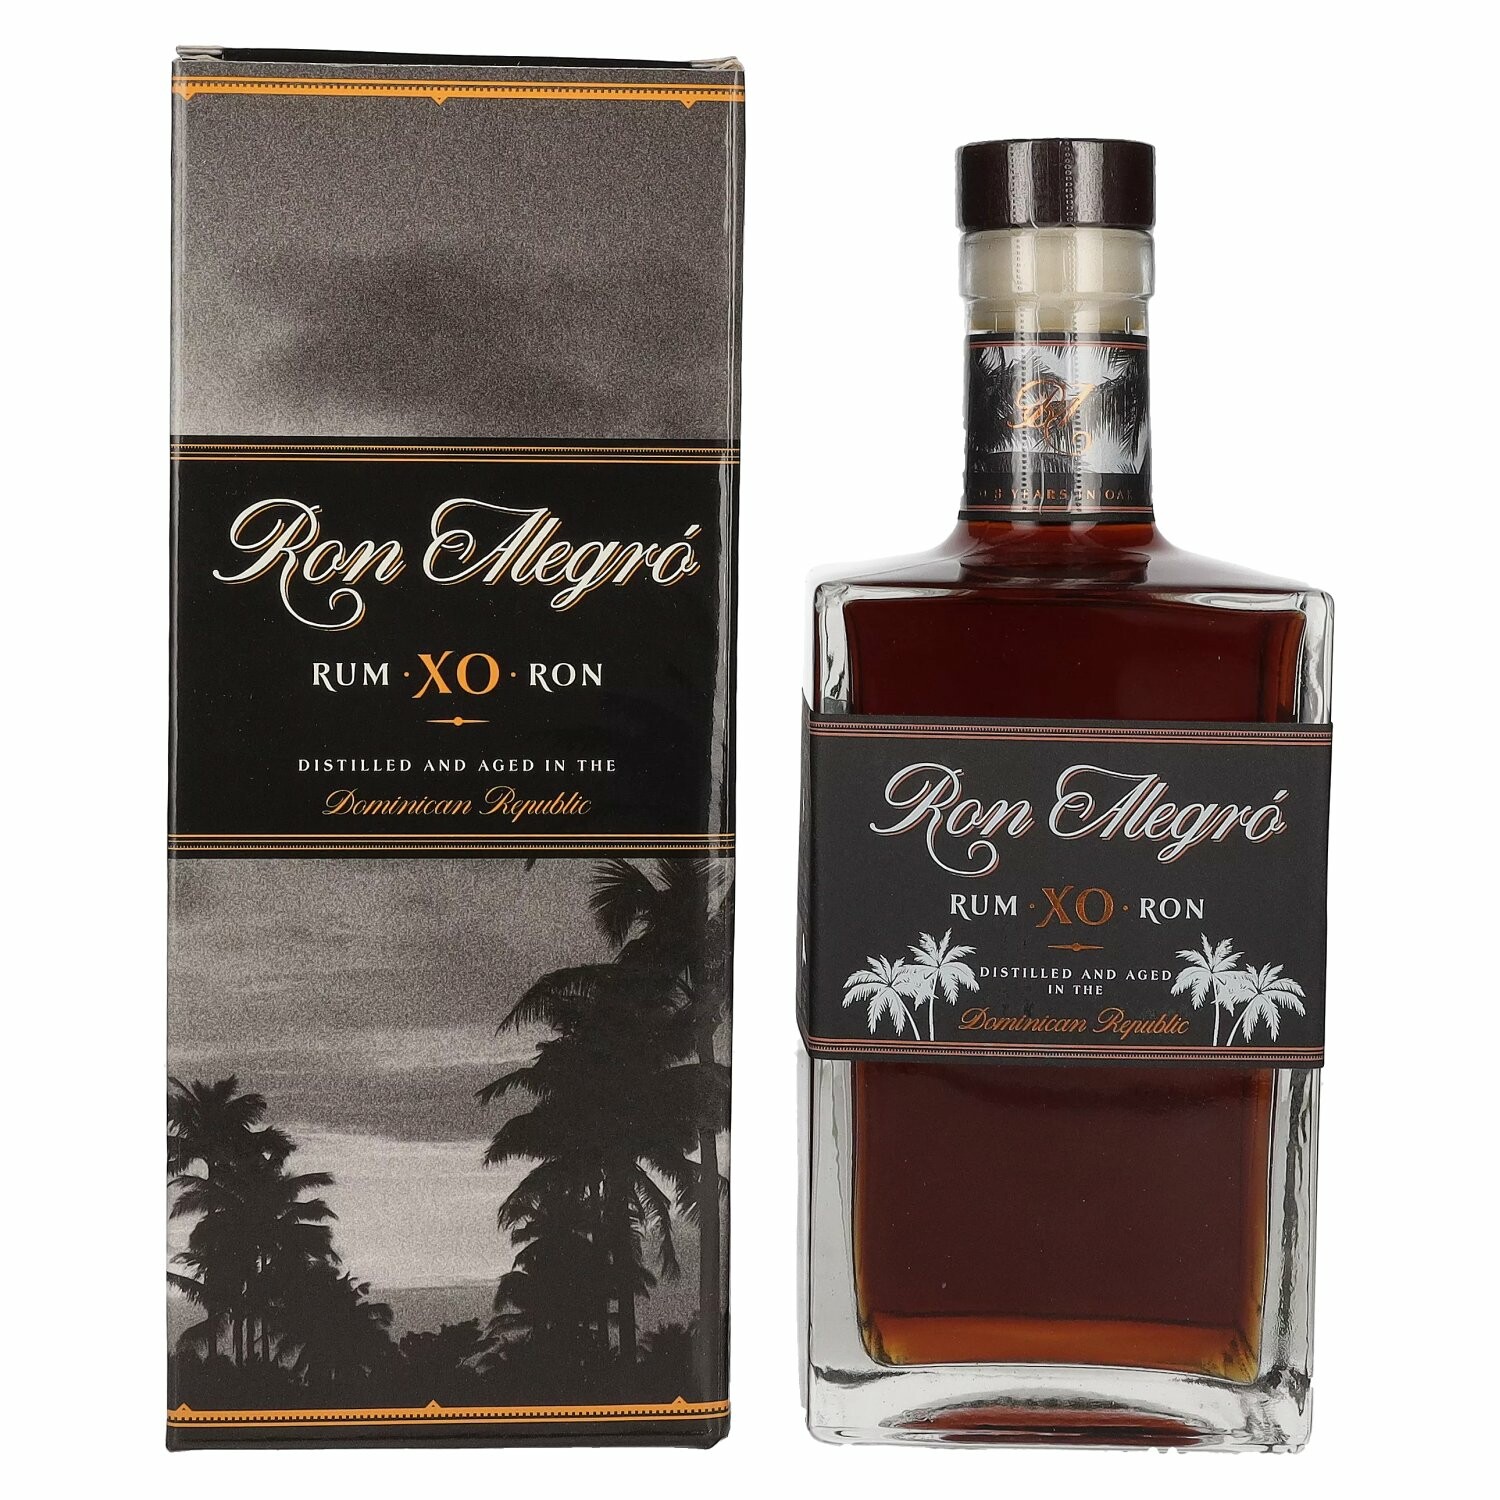 Ron Alegró XO Dominican Republic Rum 40% Vol. 0,7l in Giftbox